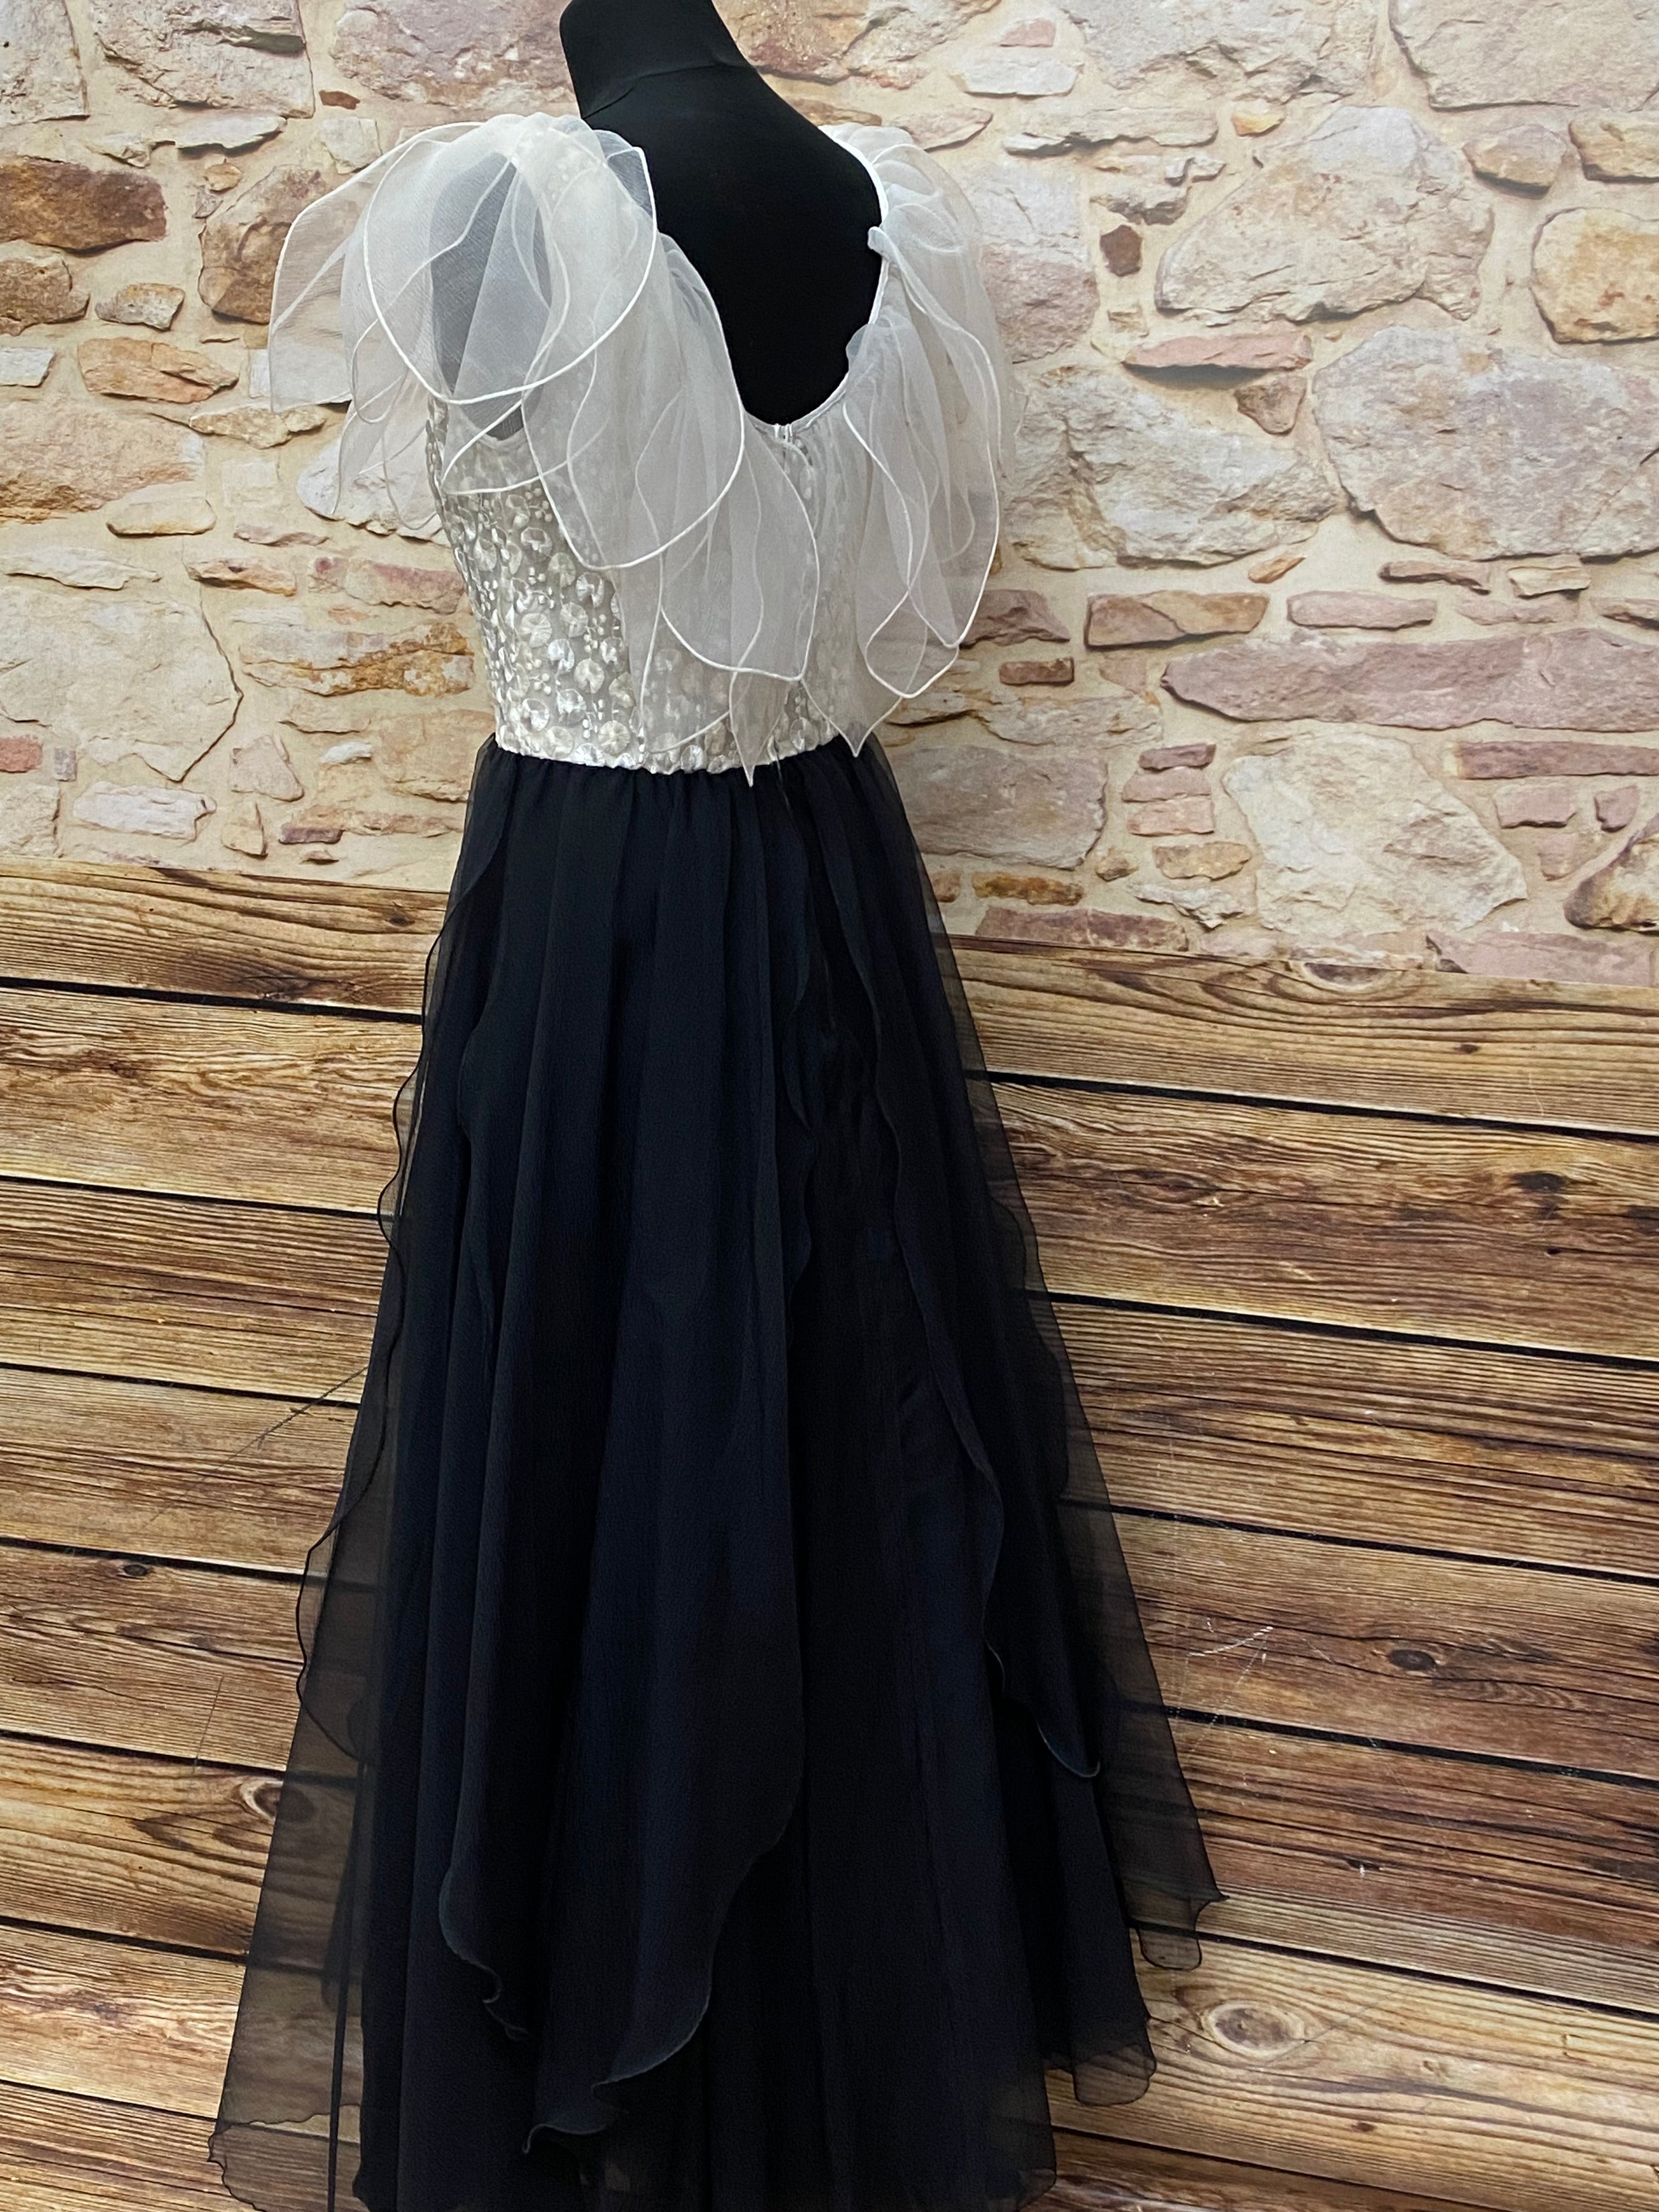 Vintage Kleid Elfe Fee Maxikleid schwarz/weiß Kostüm Gr.36, original